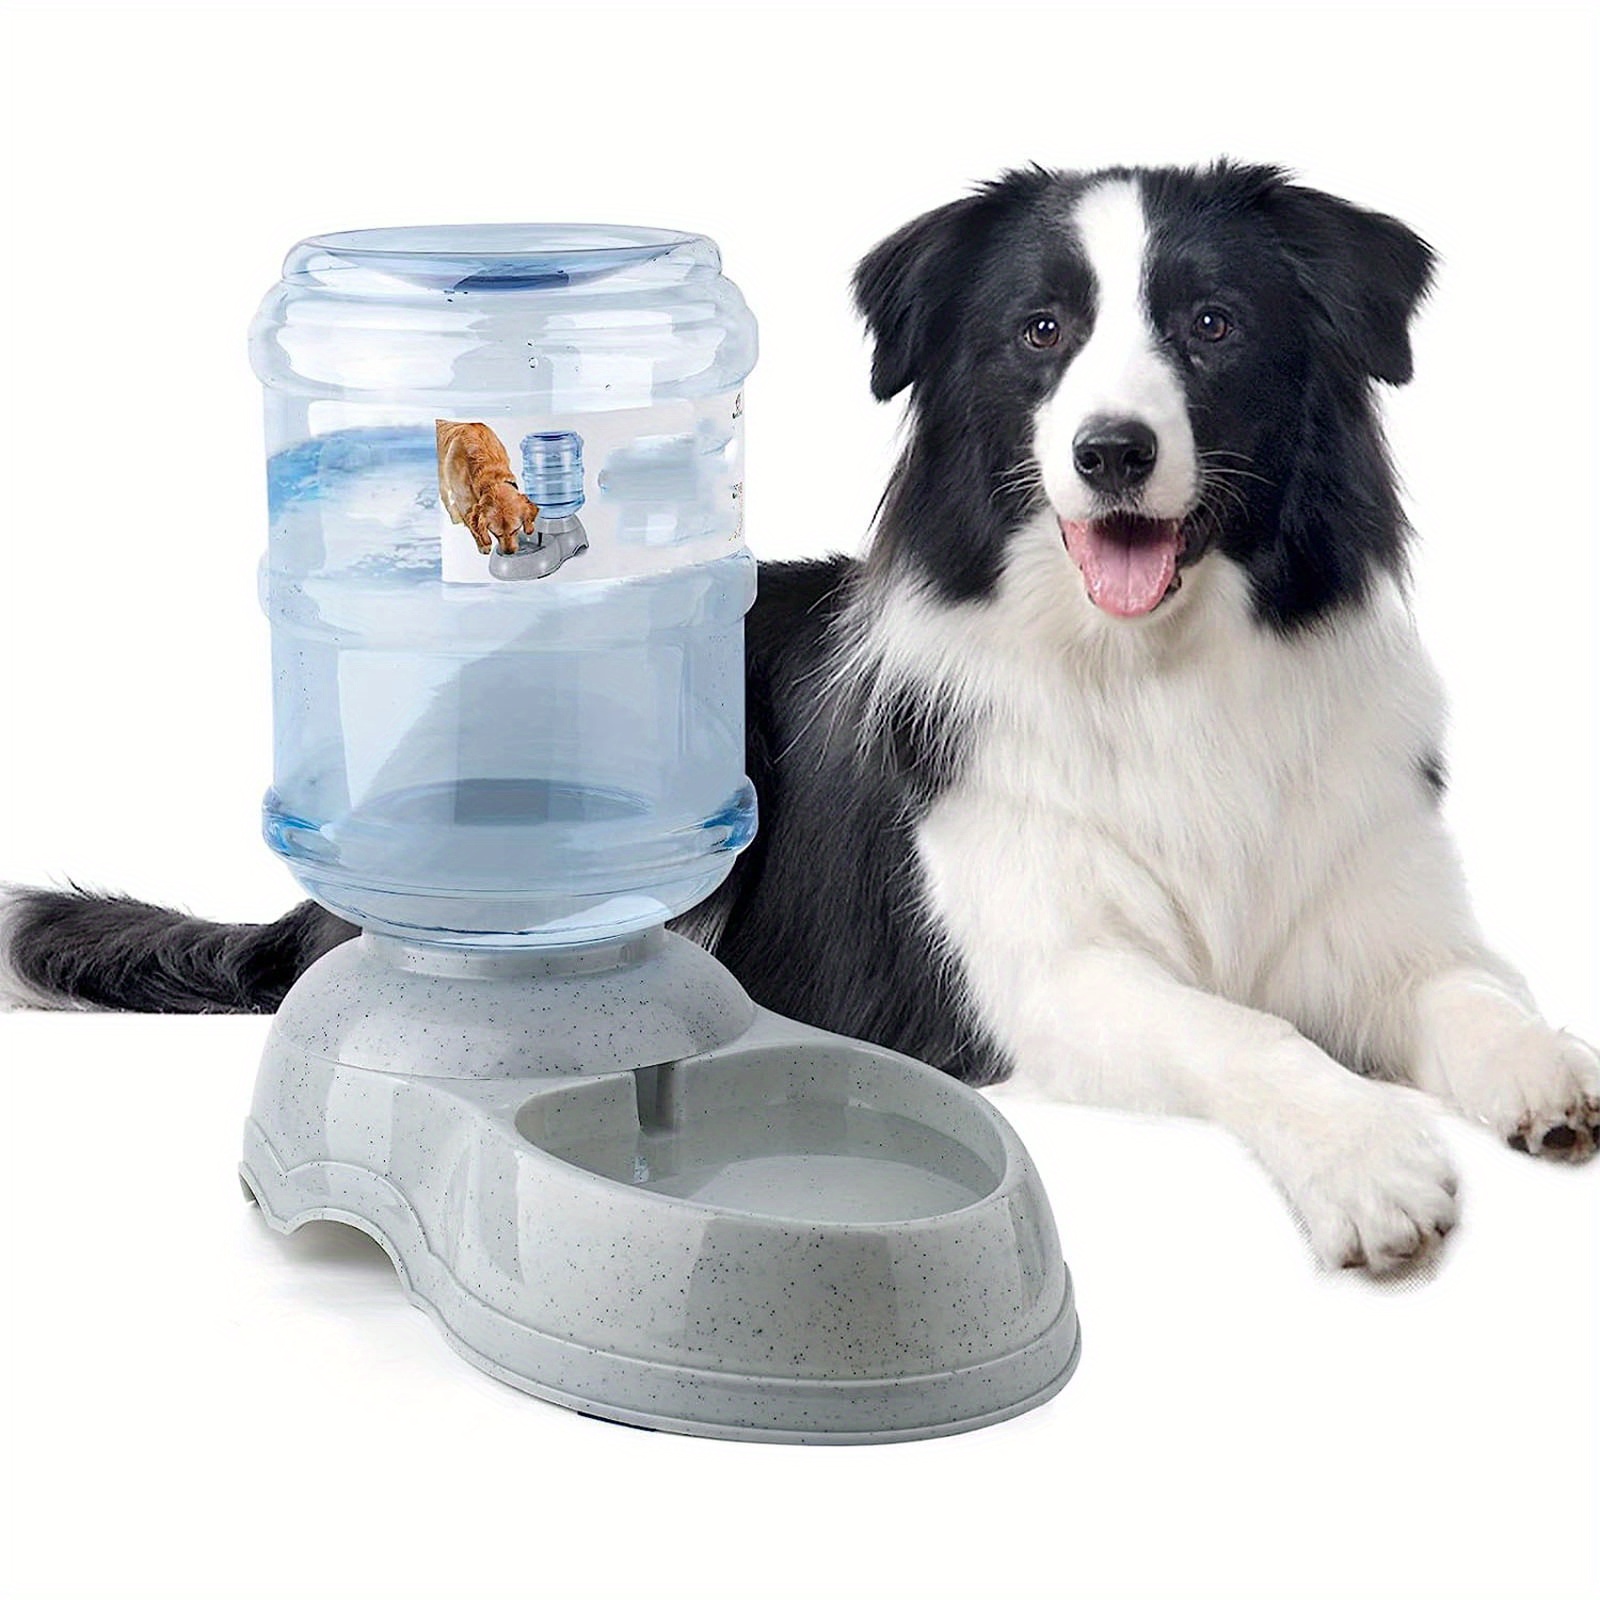  Dispensador de agua para perros, estación dispensadora